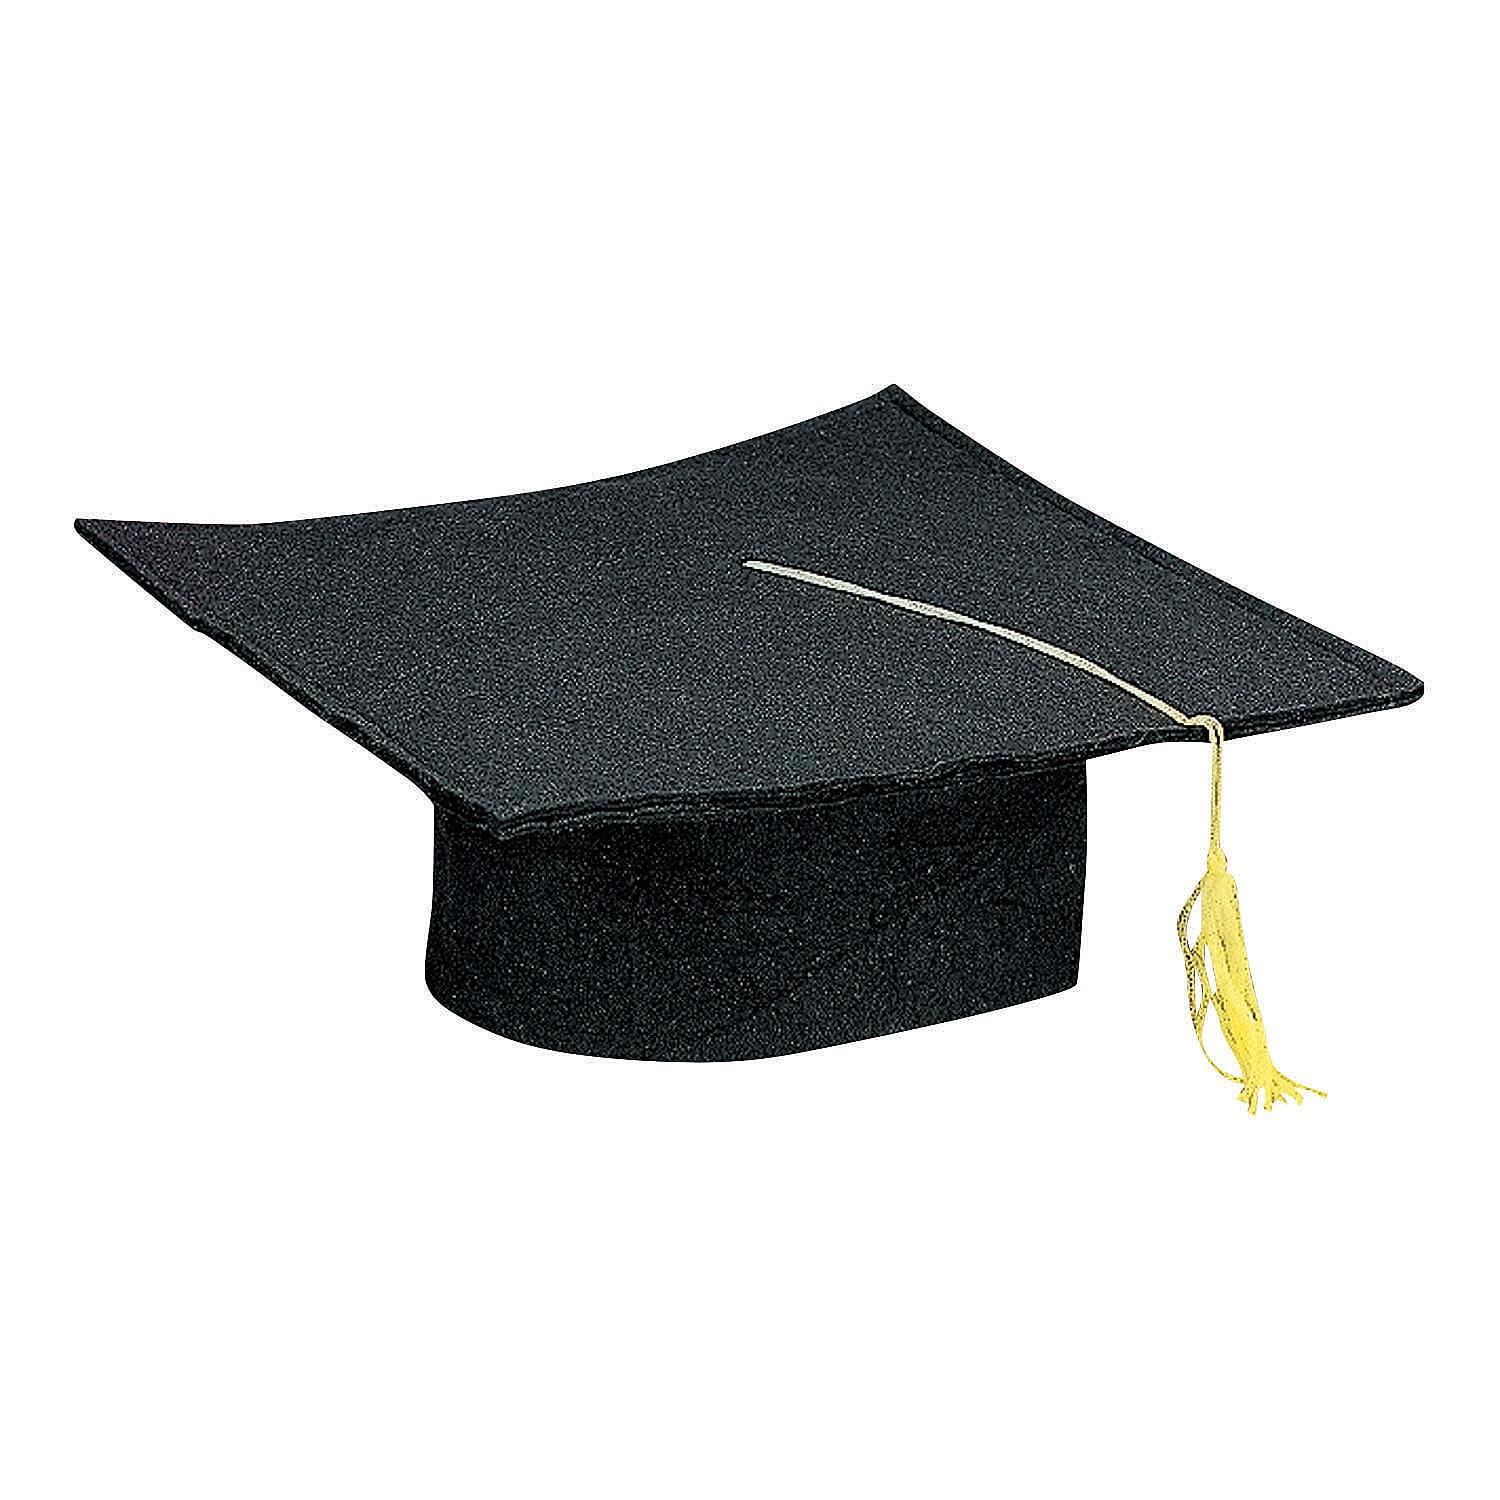 25 Amazing Graduation Cap Decorating Ideas You'll Want To Copy - Society19  | Graduation cap, Grad cap designs, Graduation cap designs